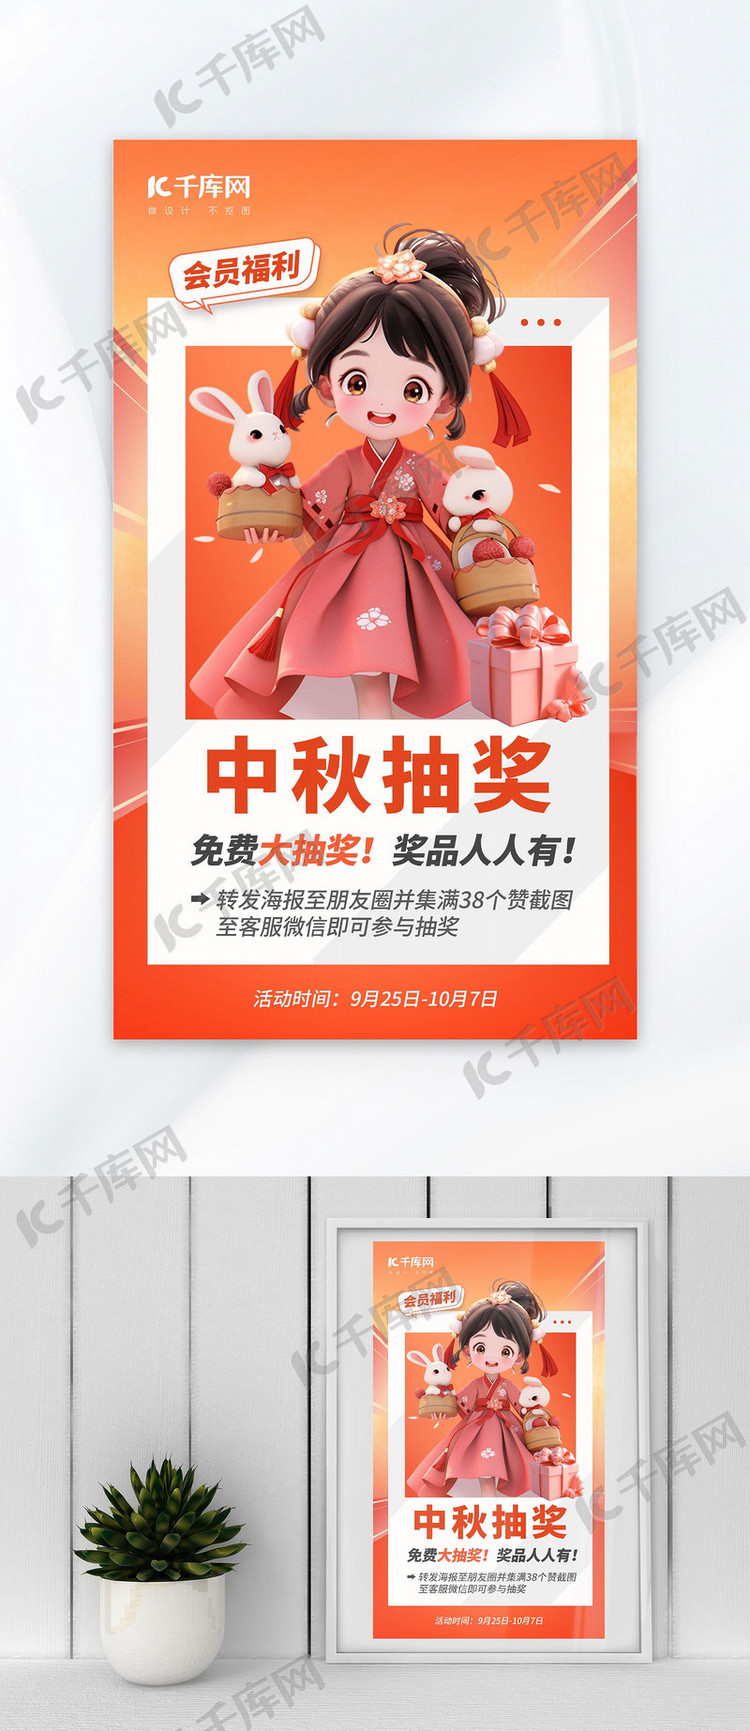 中秋节抽奖福利暖色AIGC模板广告营销促销海报